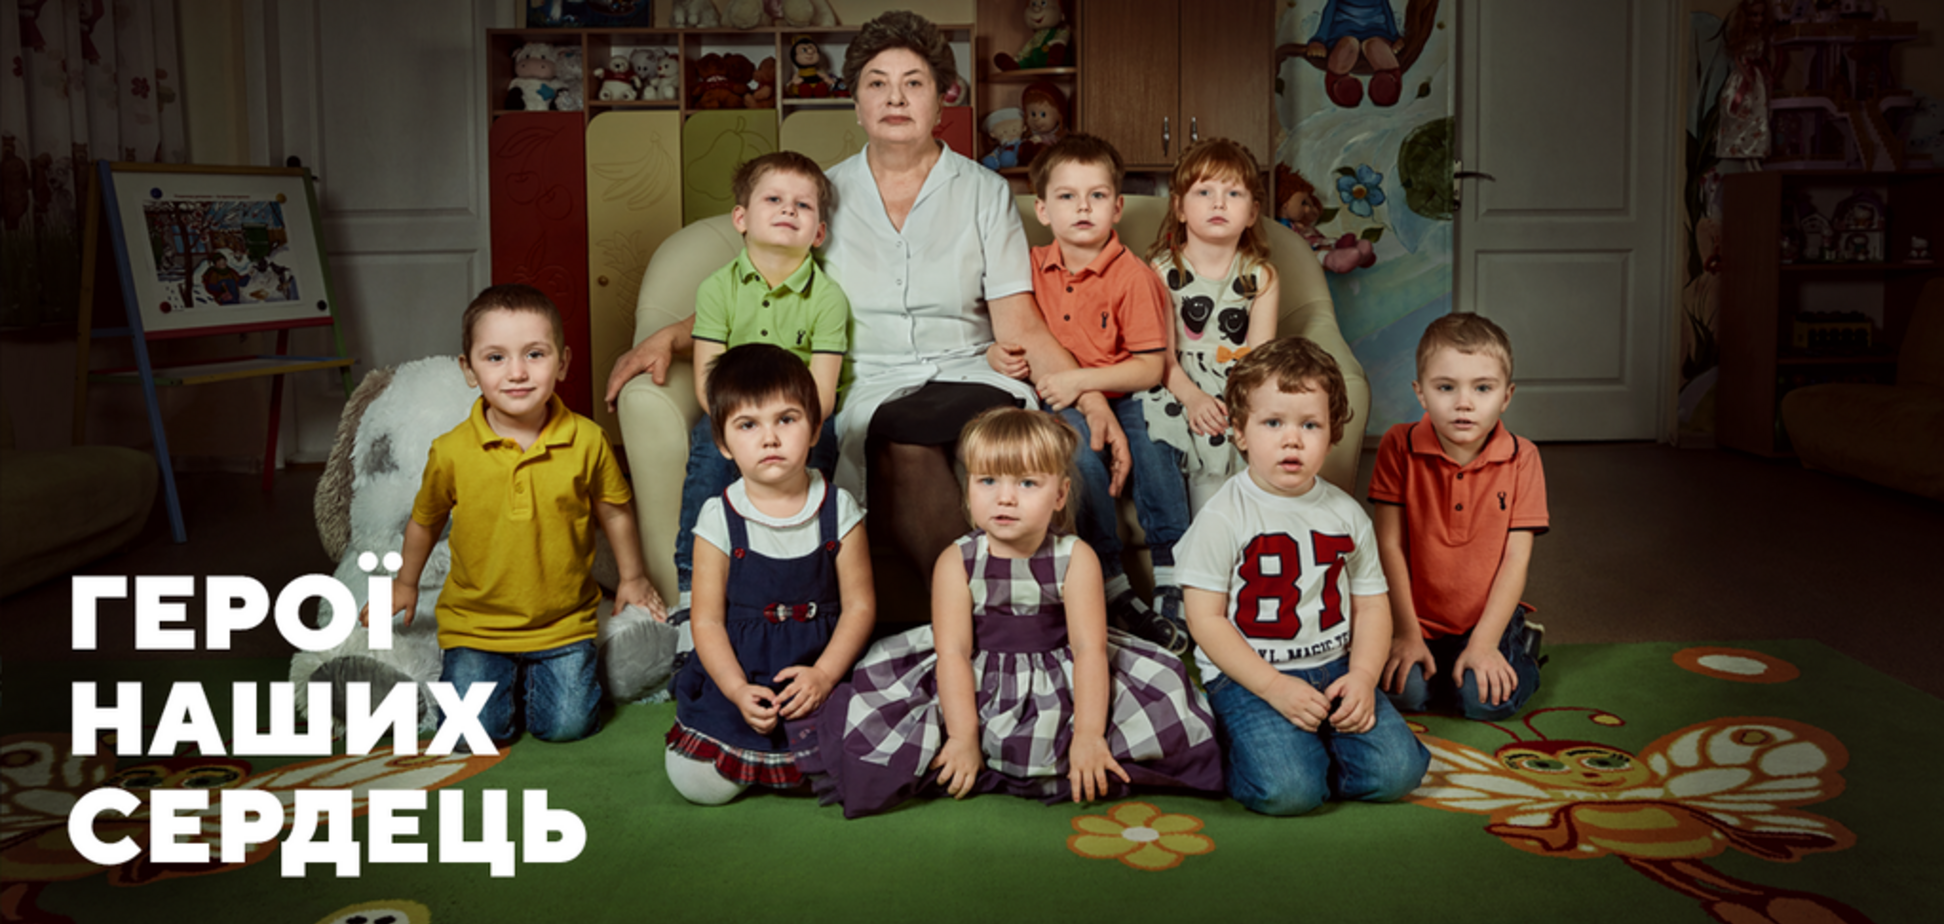 Врятувала дітей від Росії: історія Катерини Донцової, яка здійснила подвиг у 2014 році